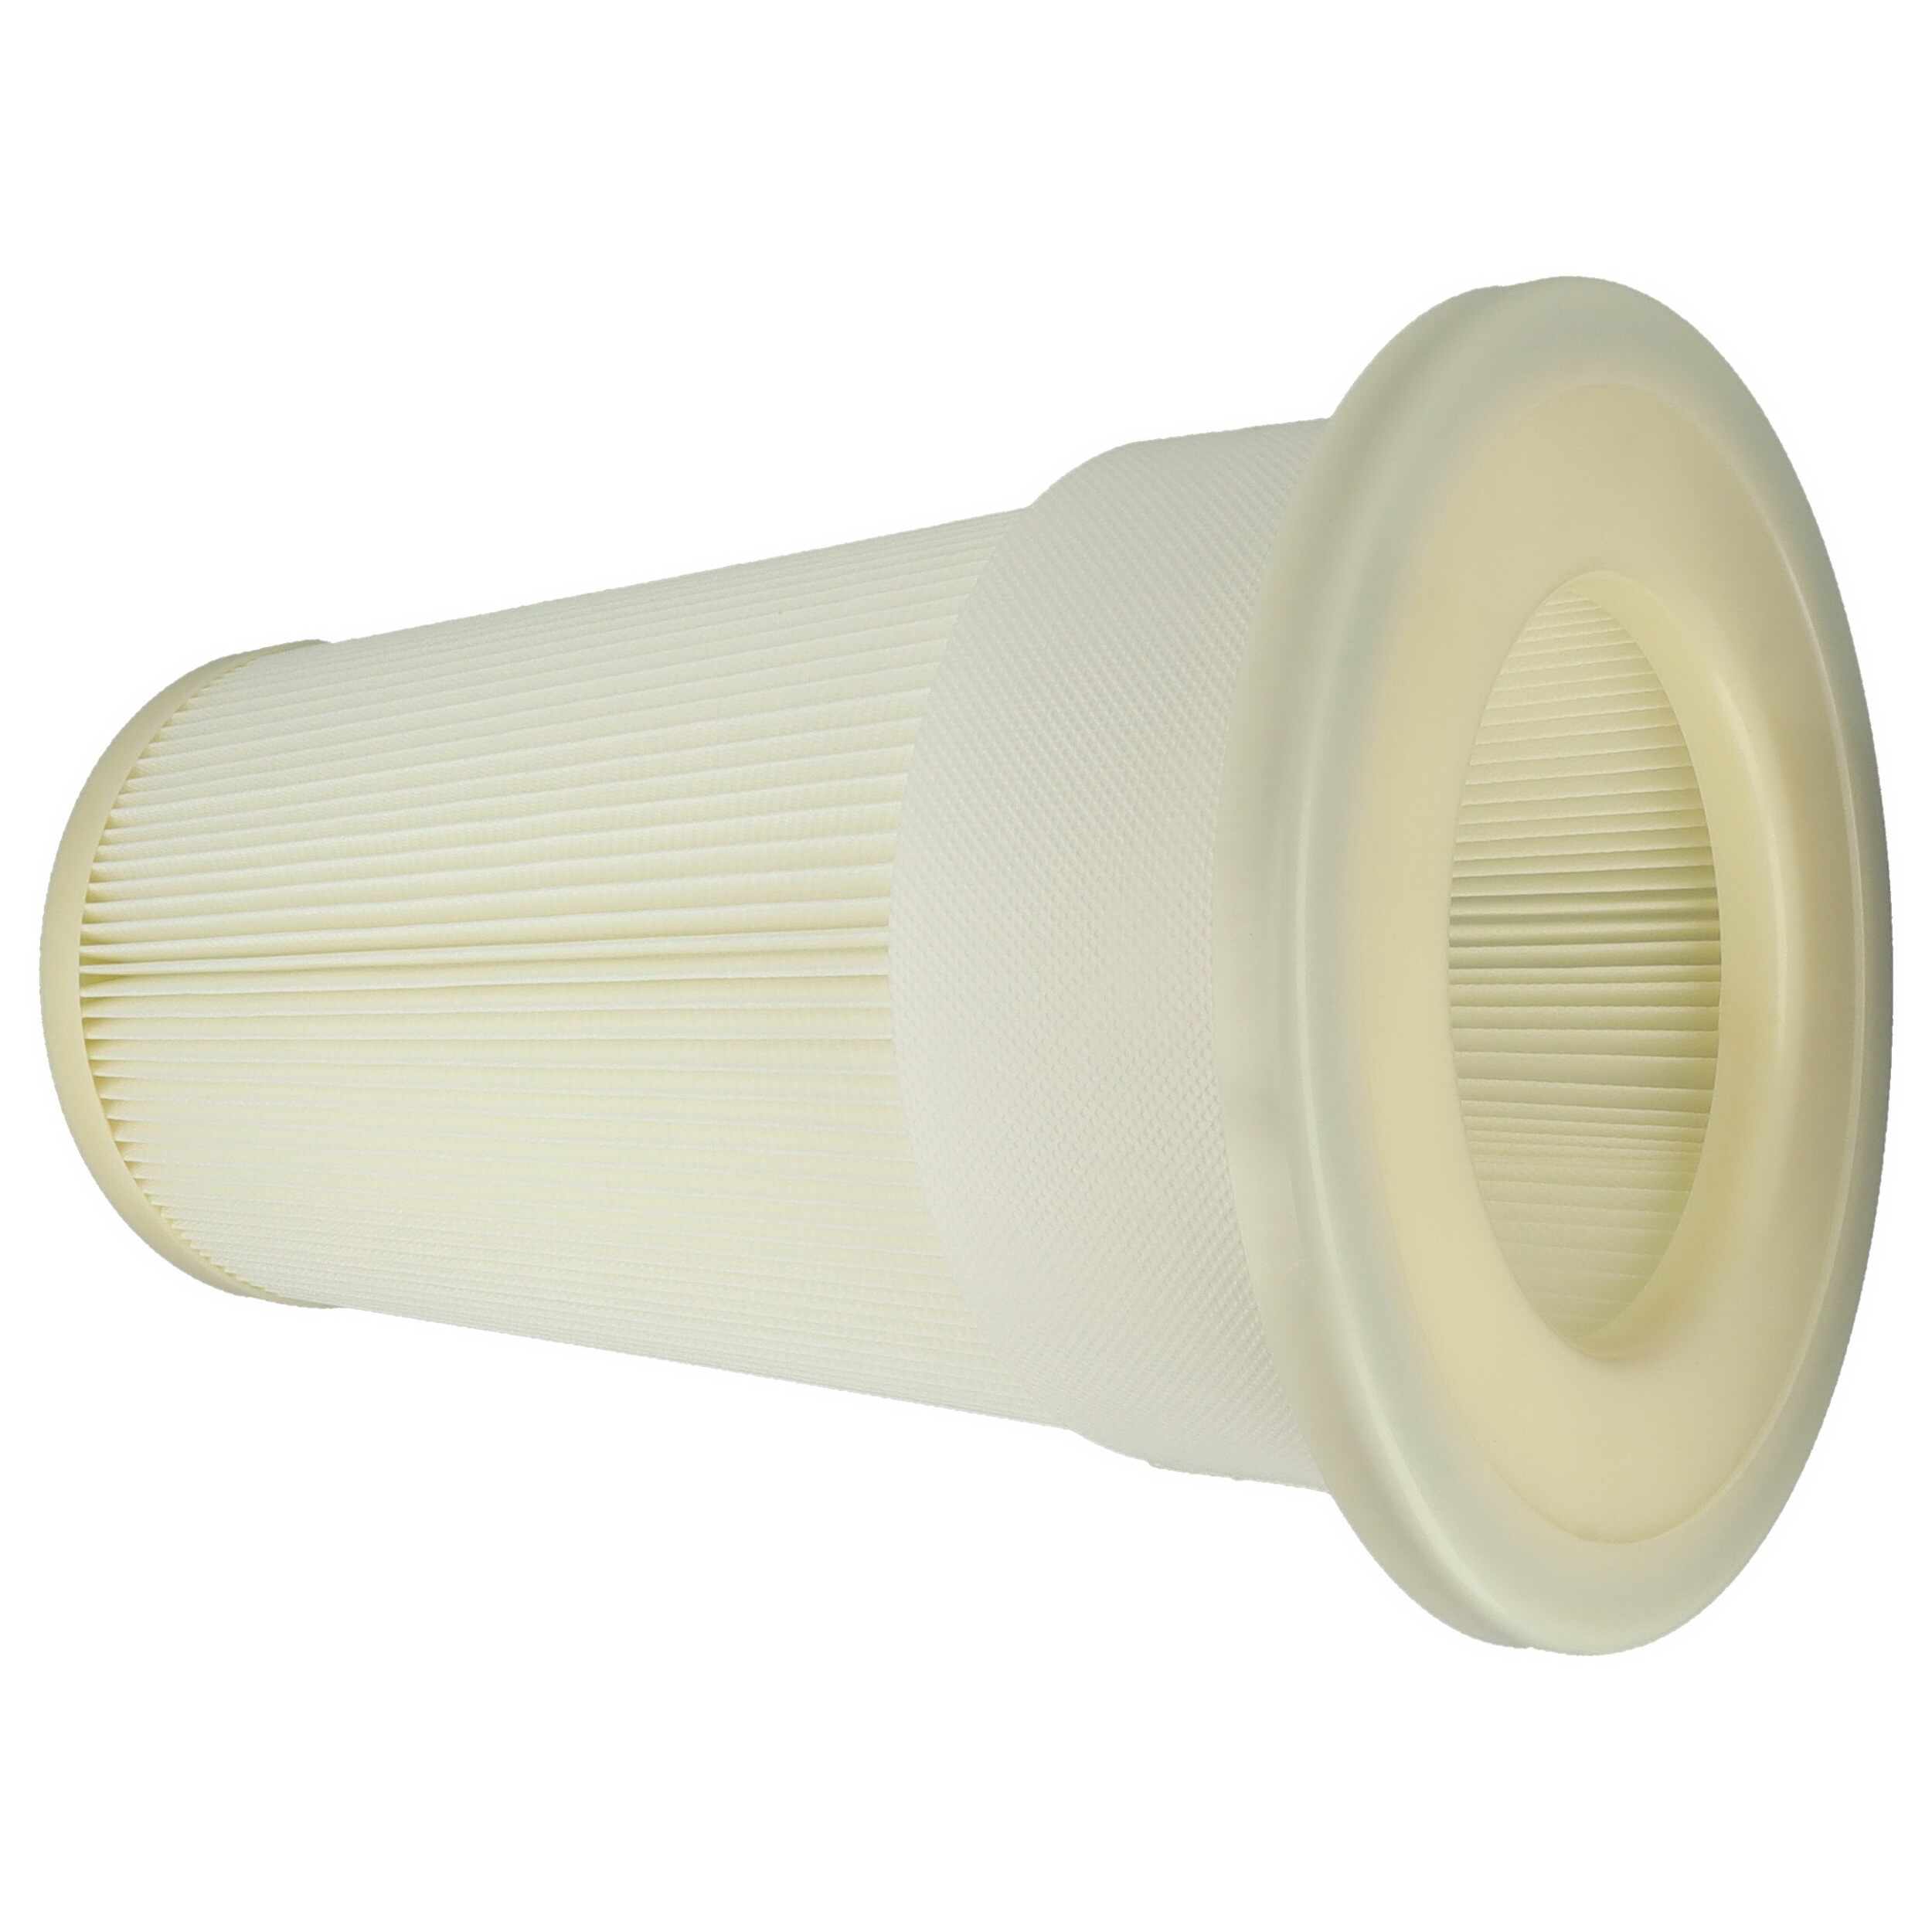 Jemný filter ako náhrada za filter vysávača Dustcontrol 42028 - M filter